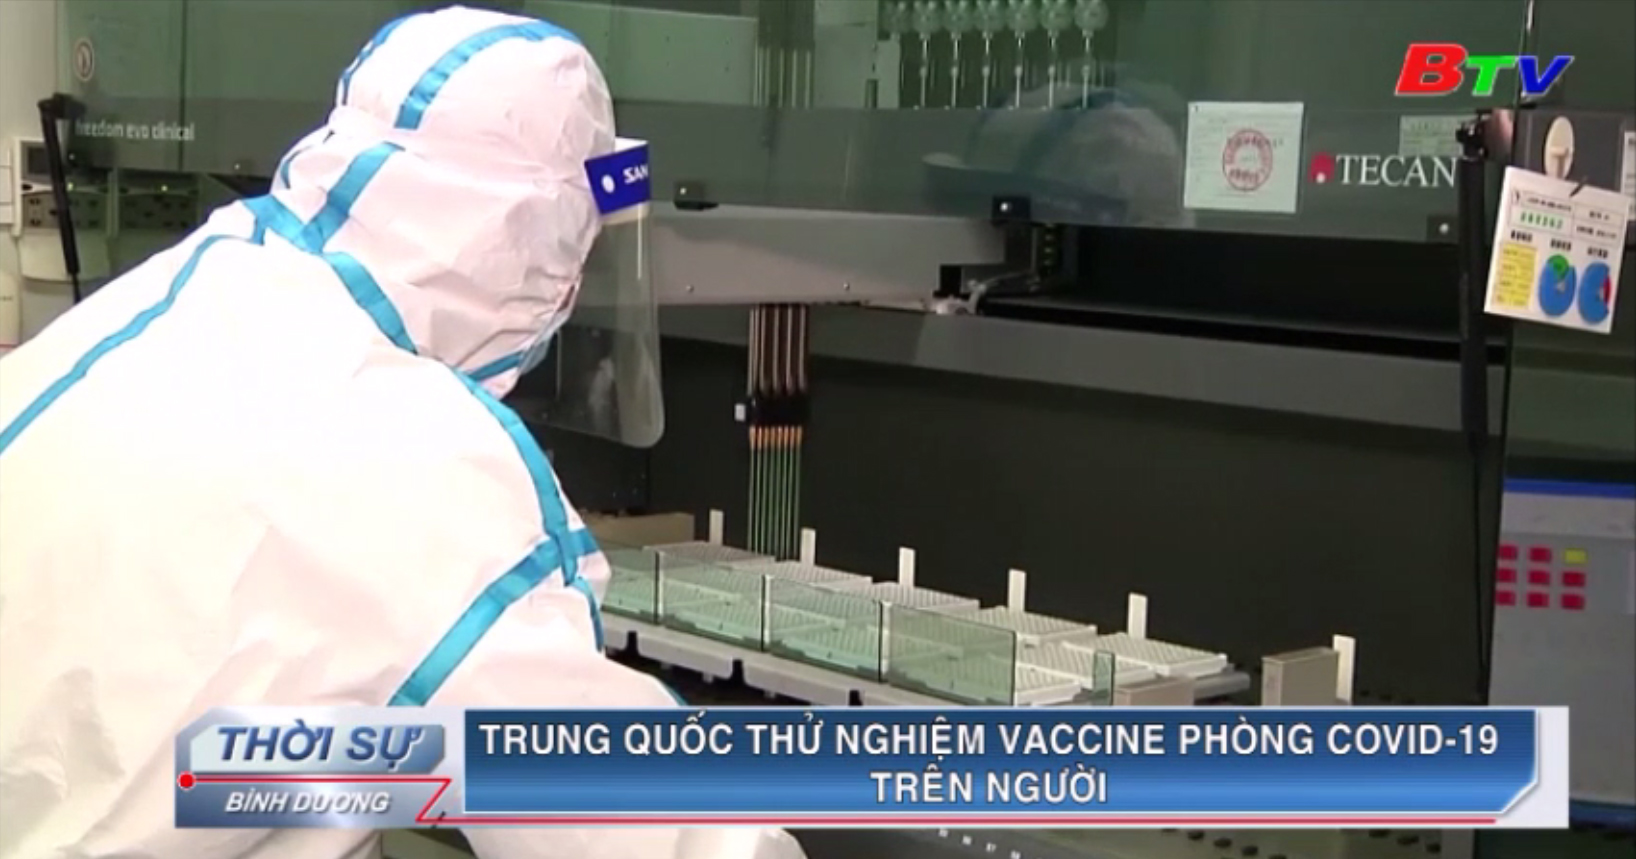 Trung Quốc thử nghiệm vaccine phòng Covid-19 trên người